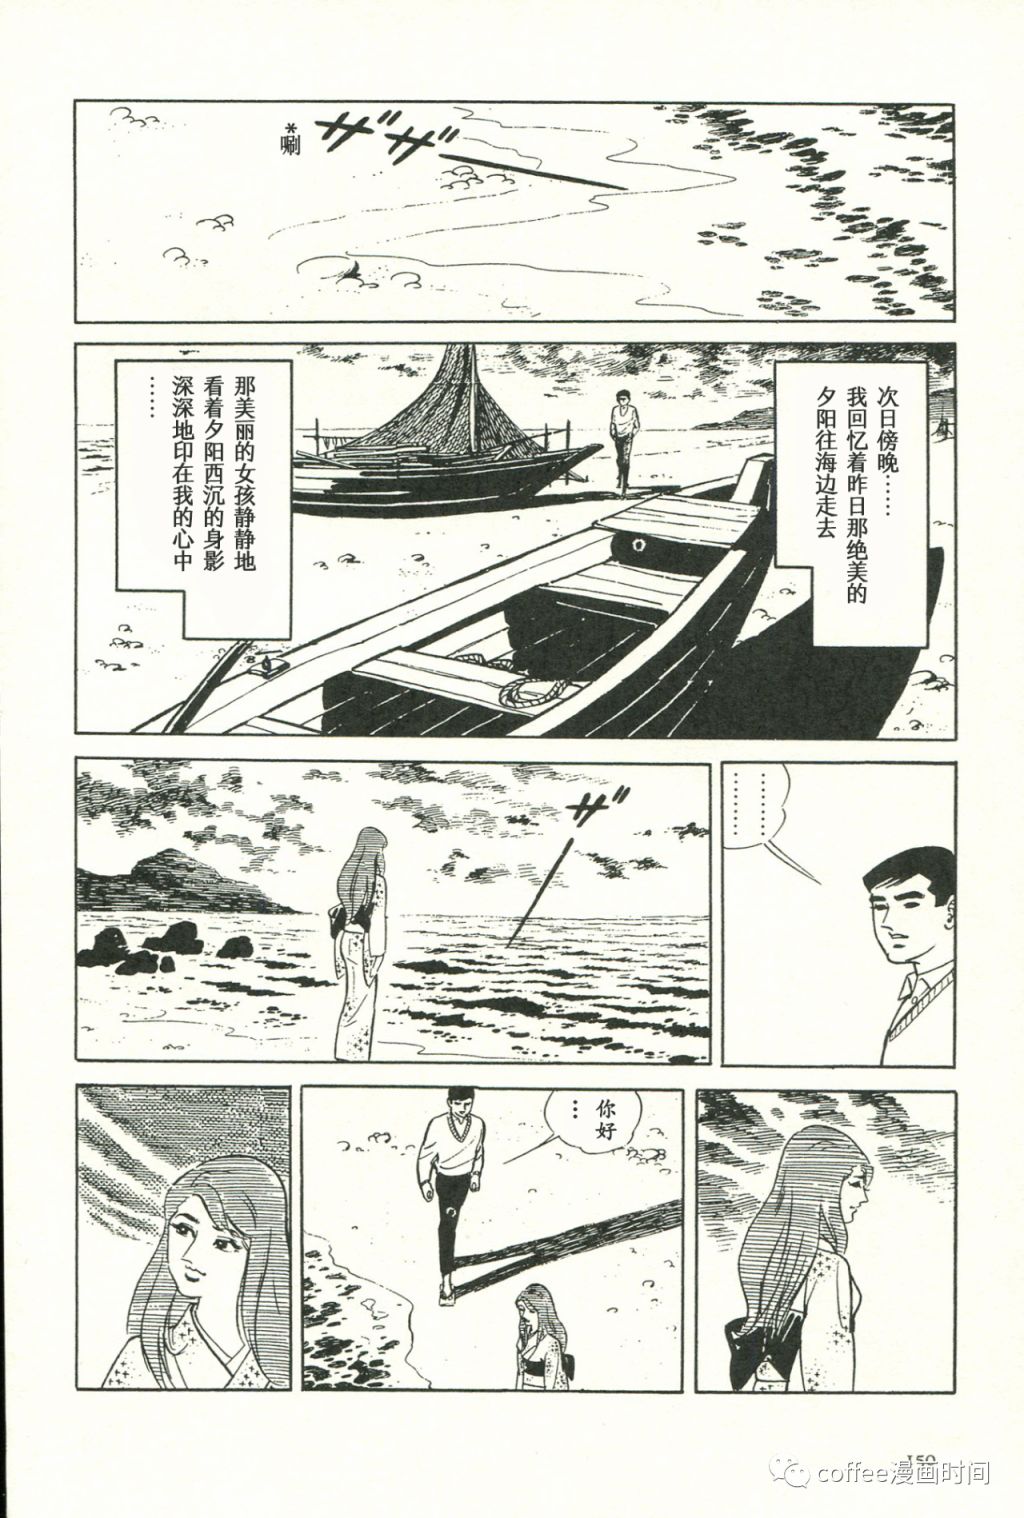 日本短篇漫畫傑作集 - 齋藤隆夫《純白的夕陽》 - 5